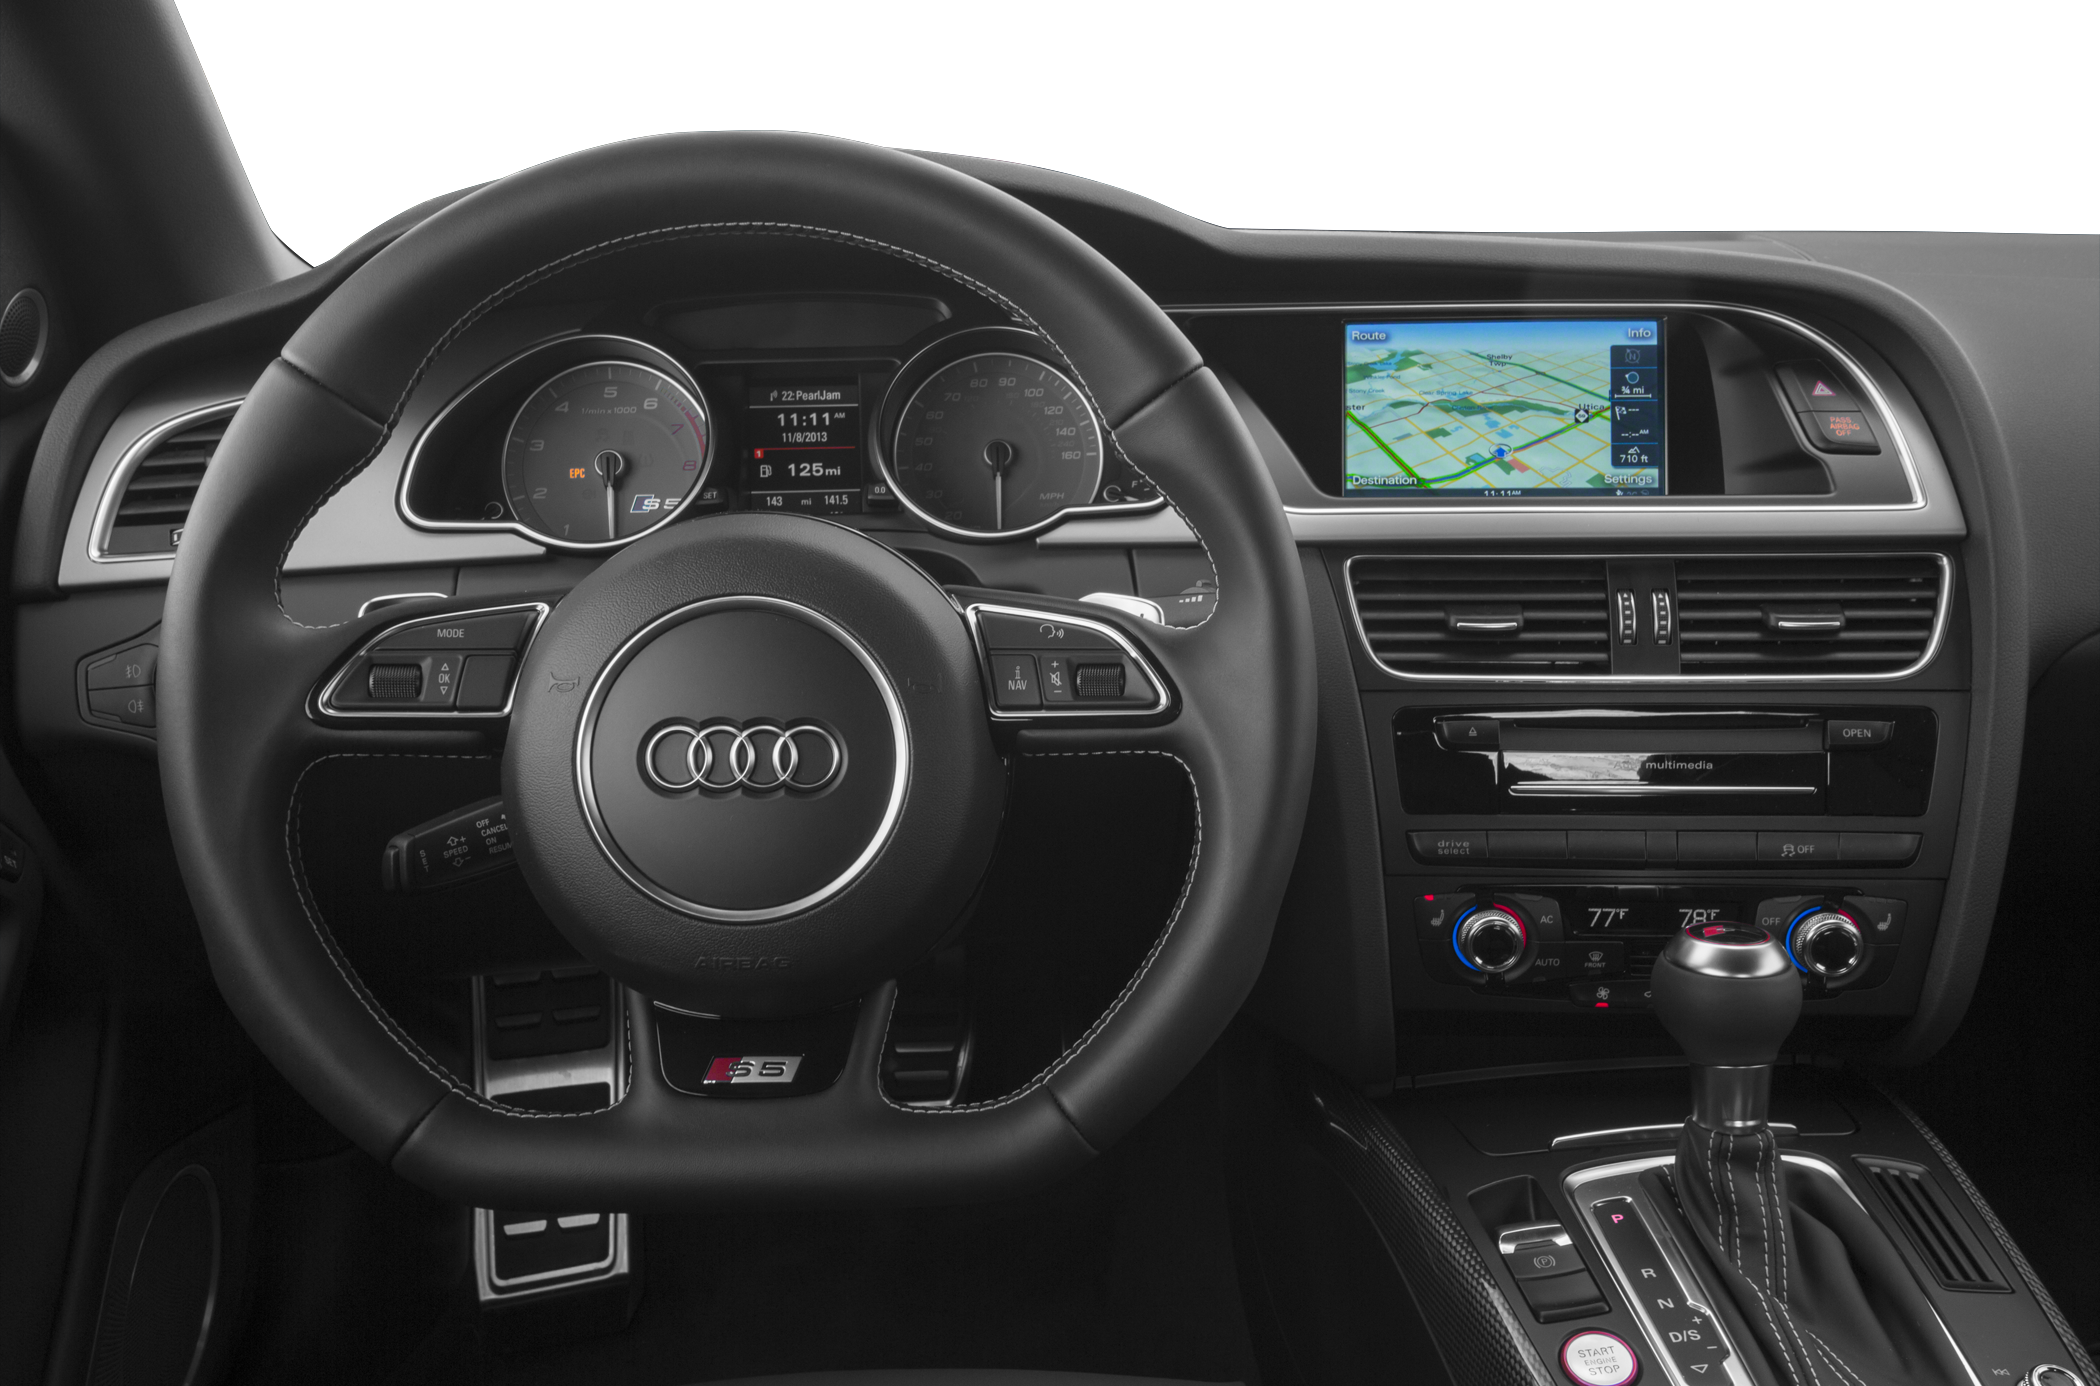 2014 Audi S5